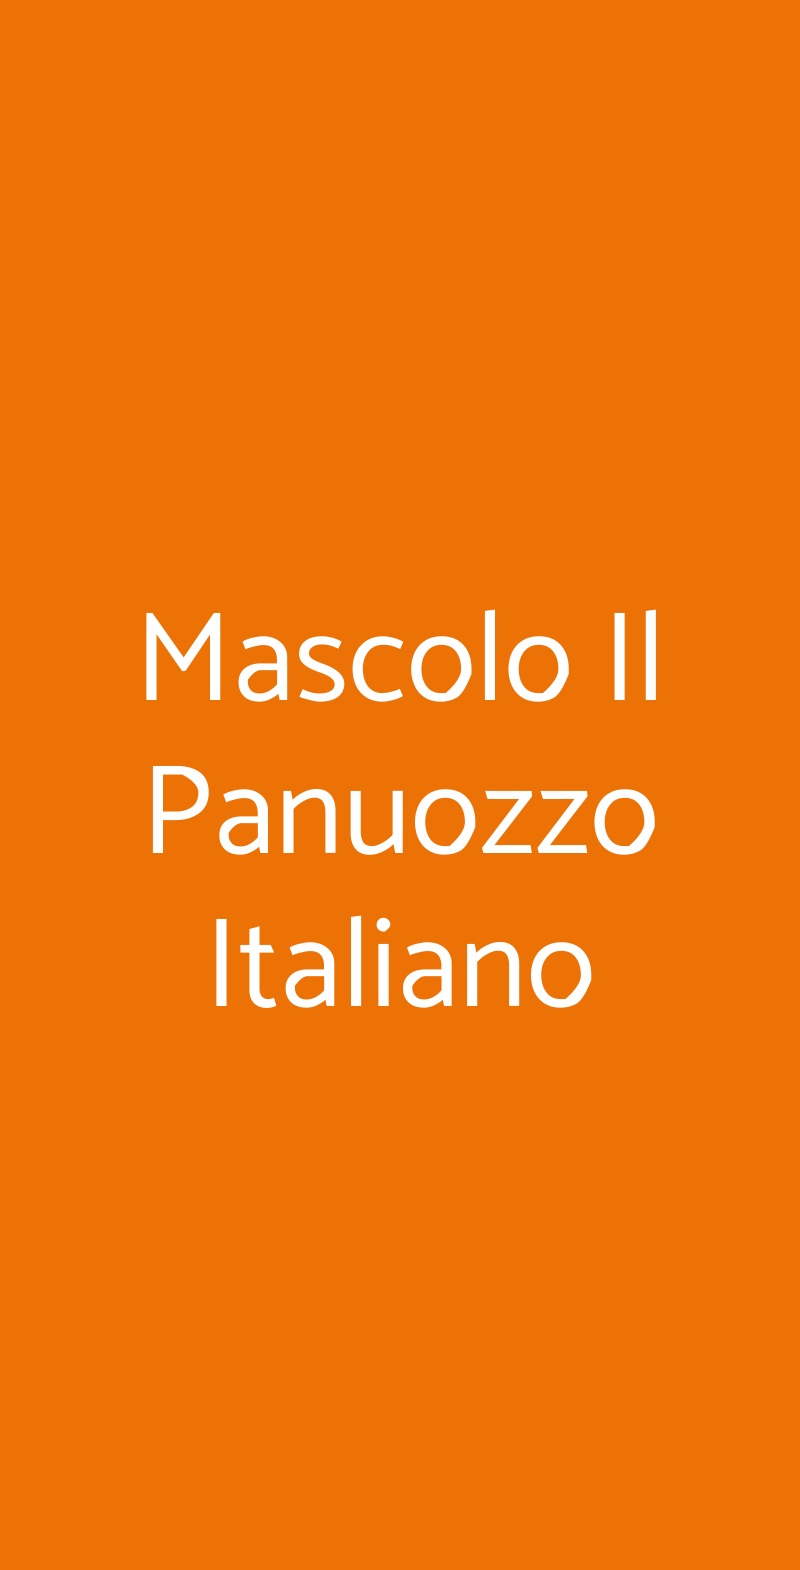 Mascolo Il Panuozzo Italiano Napoli menù 1 pagina